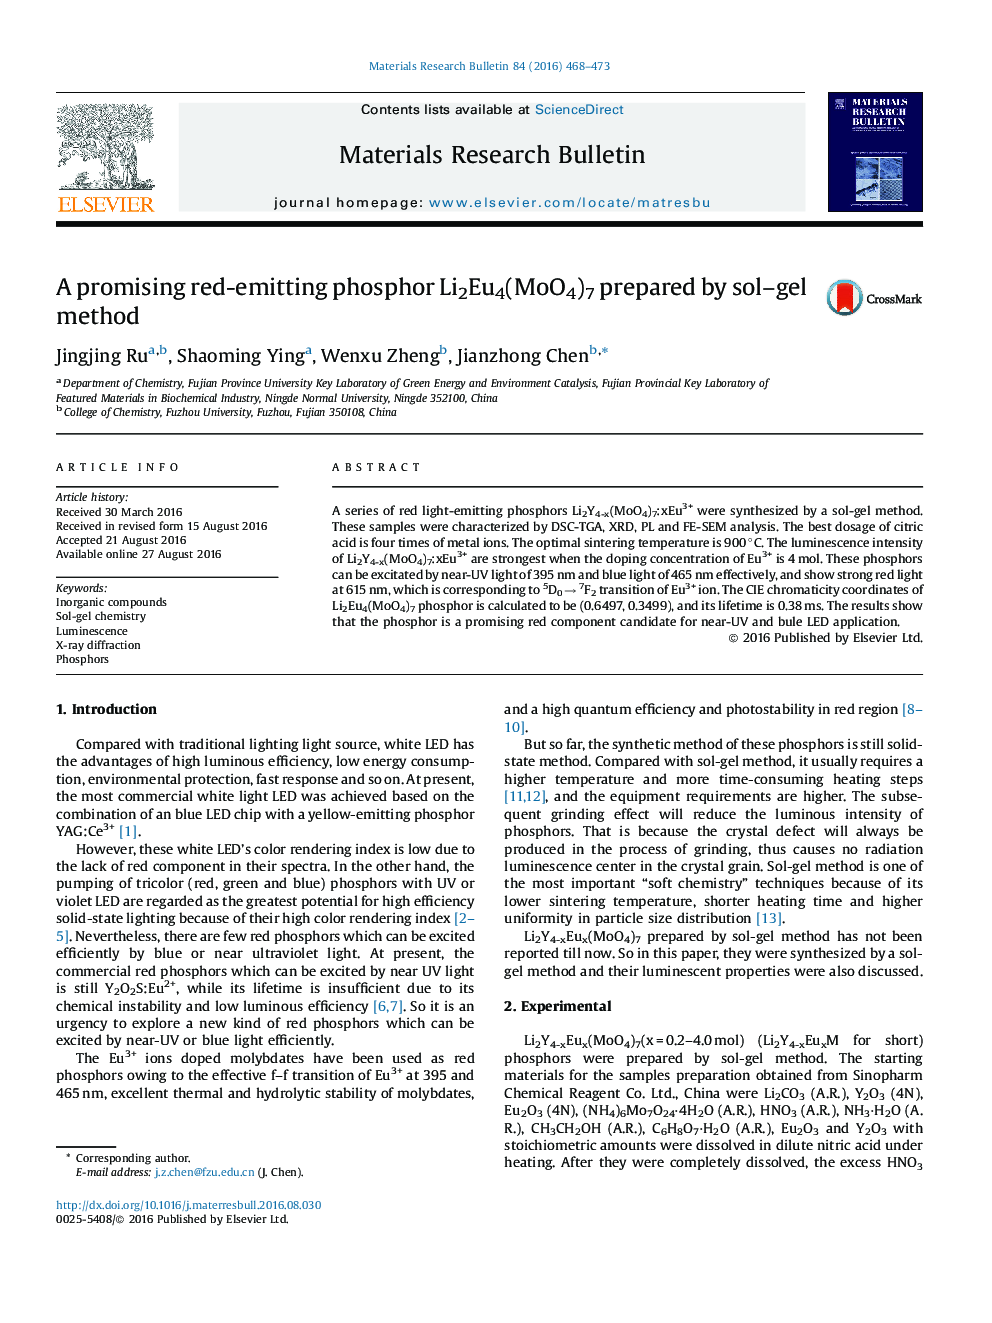 A promising red-emitting phosphor Li2Eu4(MoO4)7 prepared by sol–gel method